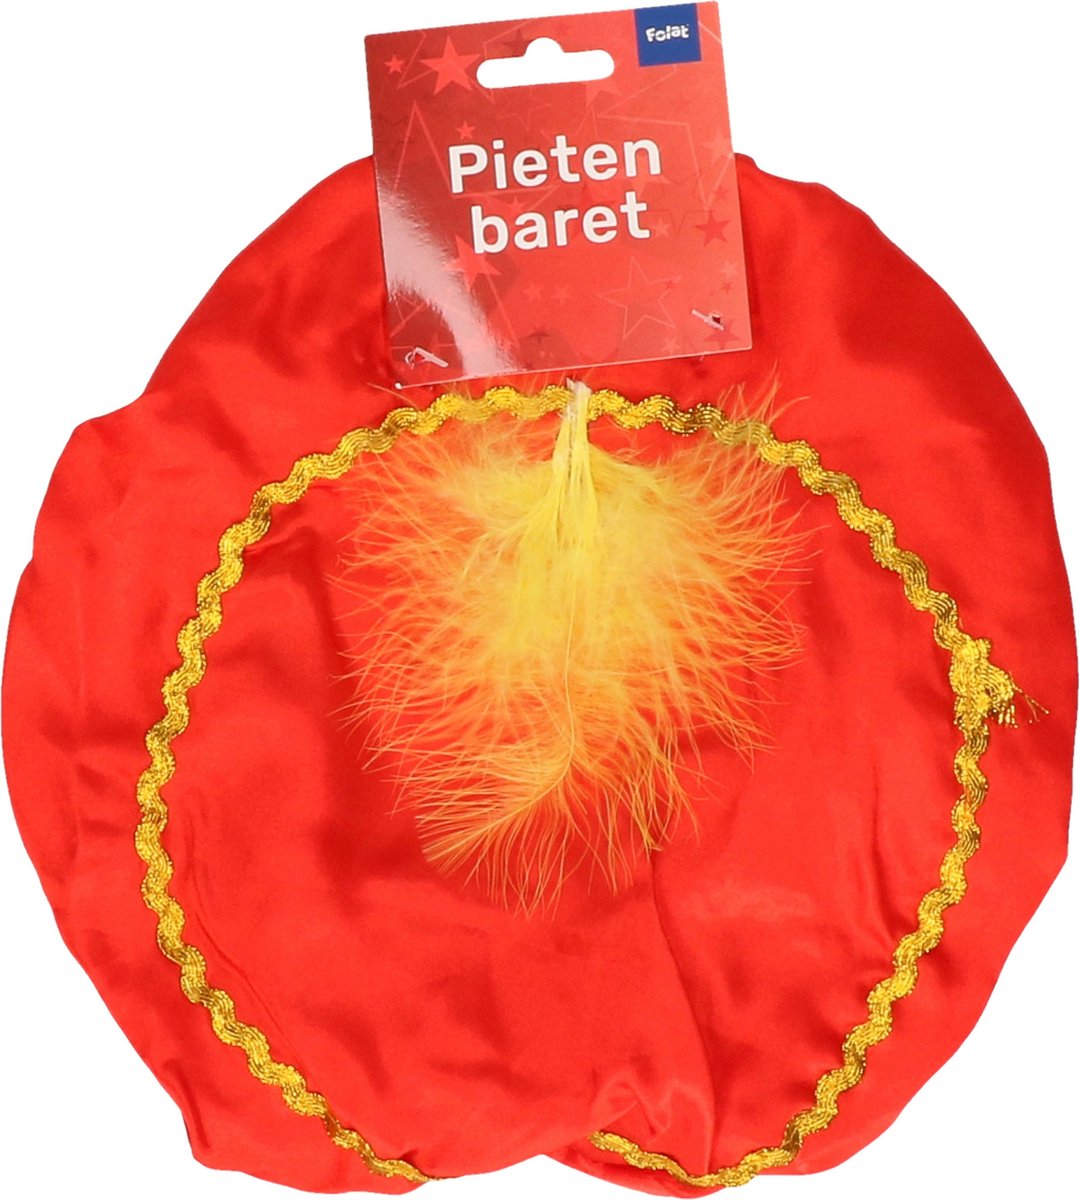 2x chapeaux Piet orange pour enfants - béret Piet - chapeau Piet